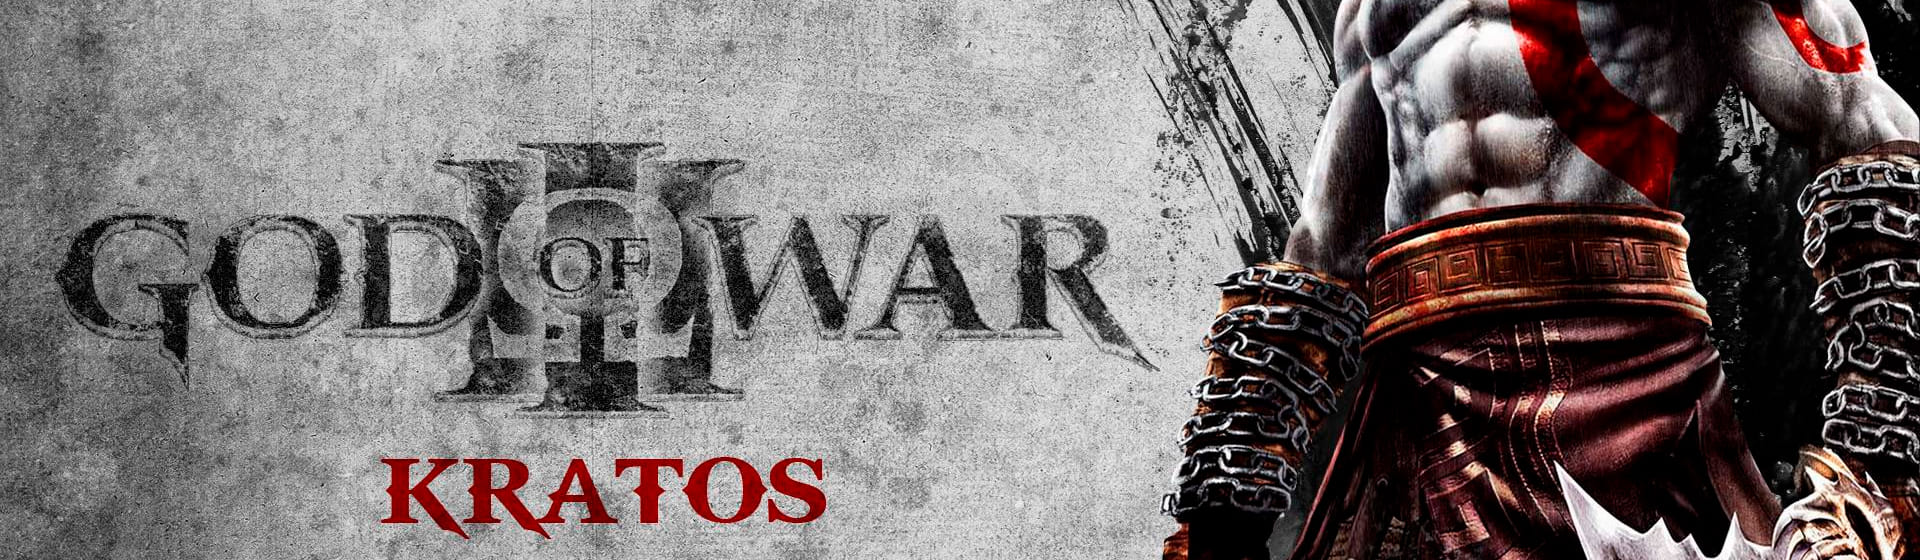 God of War - Мерч и одежда с атрибутикой